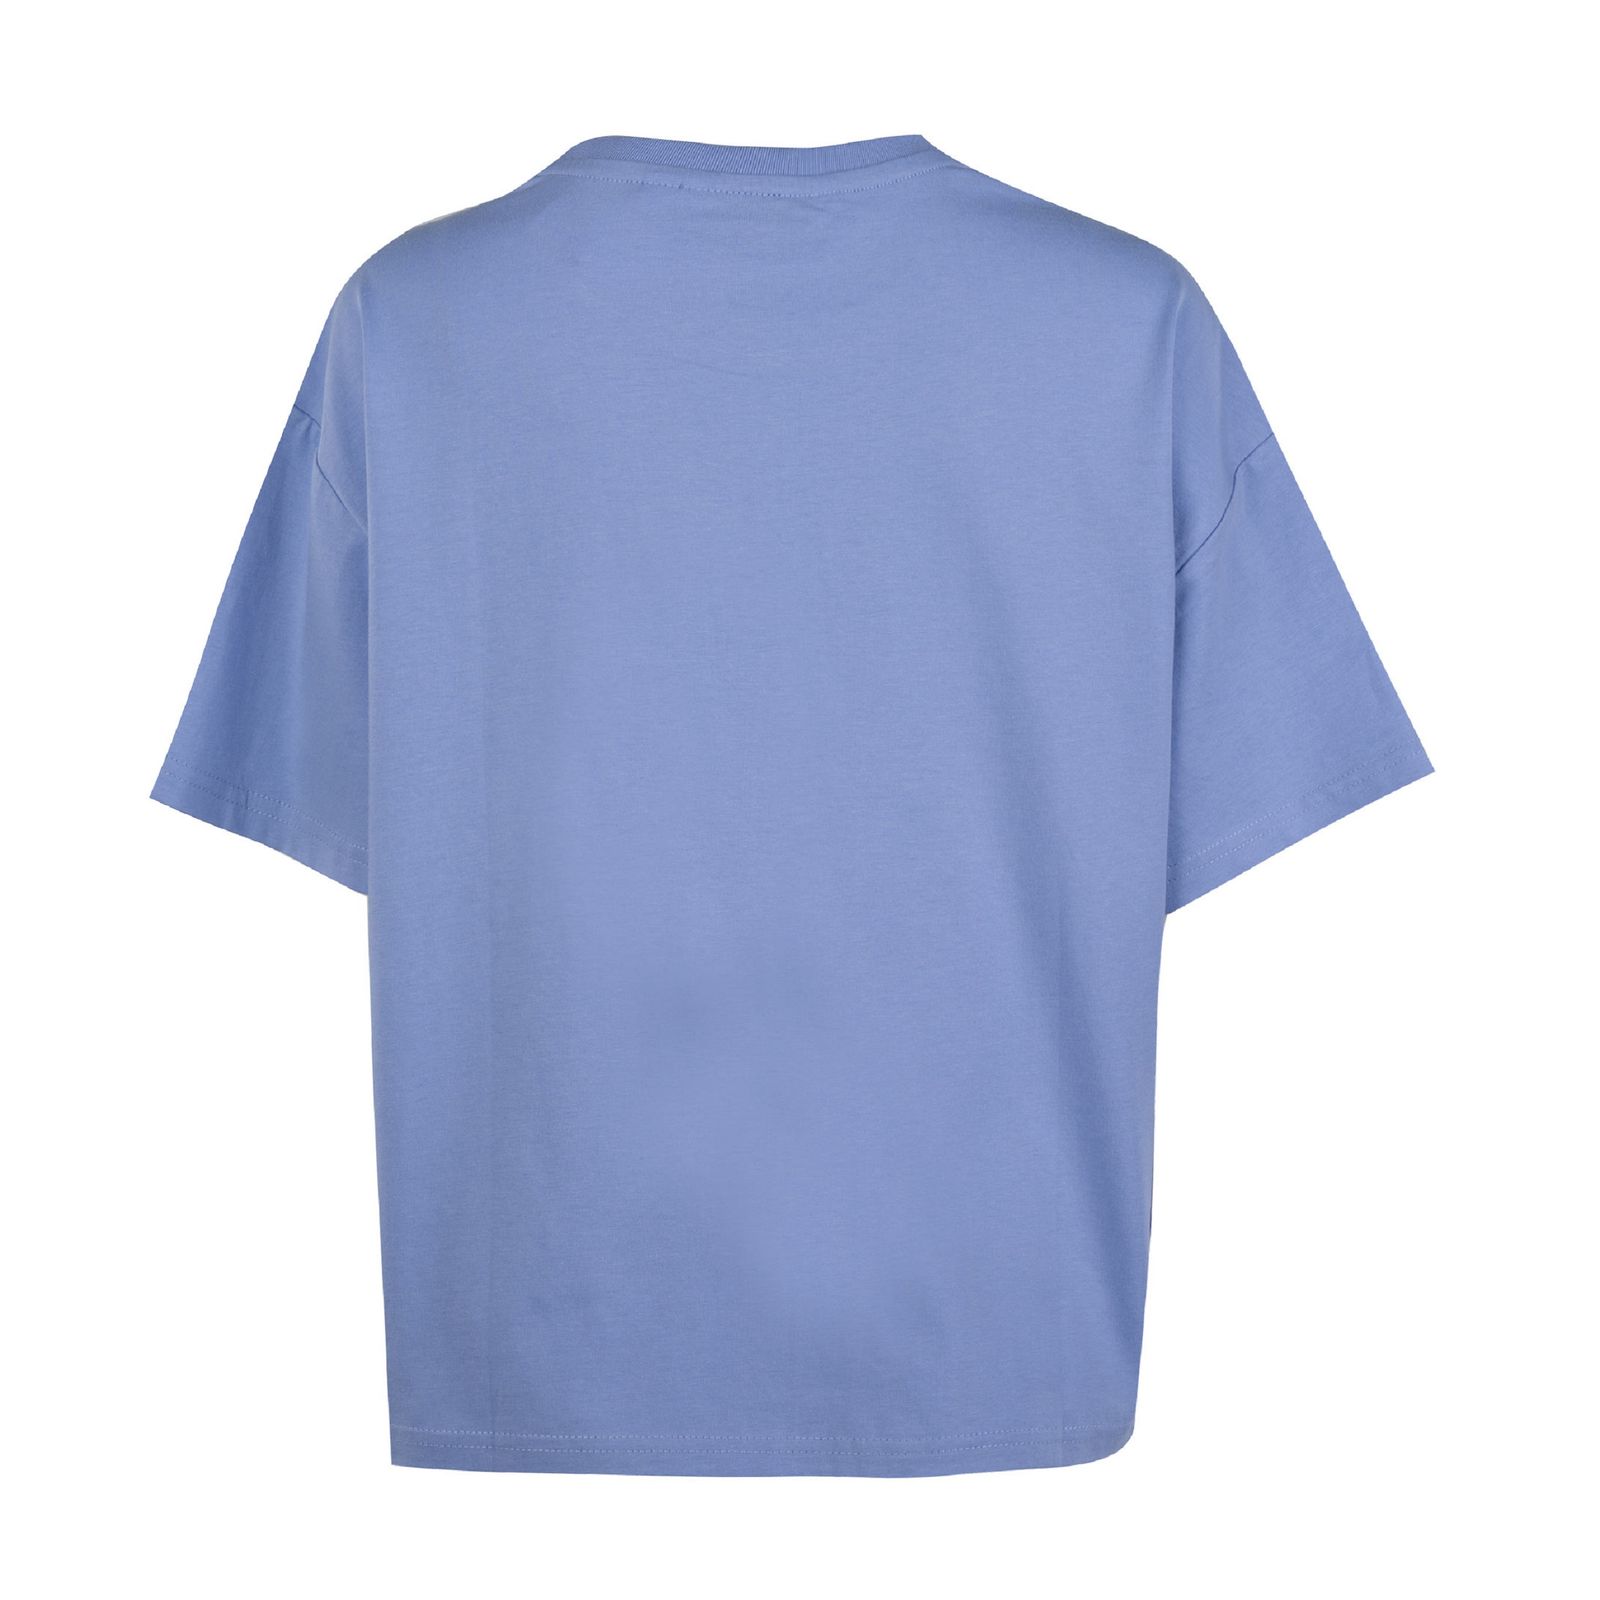 تی شرت آستین کوتاه زنانه جین وست مدل یقه گرد کد 1551164 رنگ بنفش -  - 3